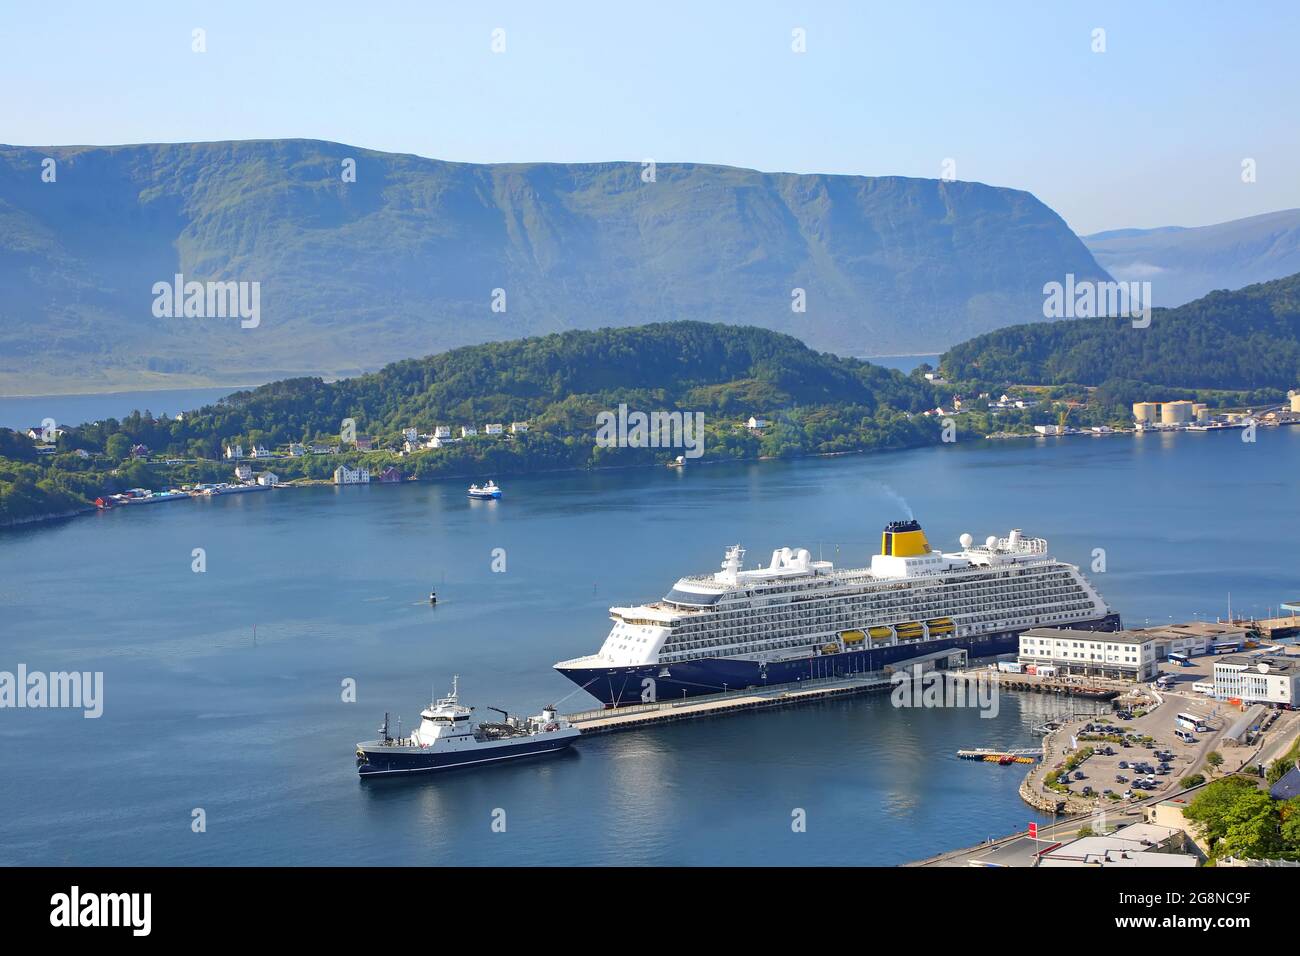 Das Kreuzschiff mit blauem Rumpf und gelbem Trichter dockte im Hafen von Alesund, Norwegen, an. Schöne Fjordlandschaft mit Berg im Hintergrund Stockfoto